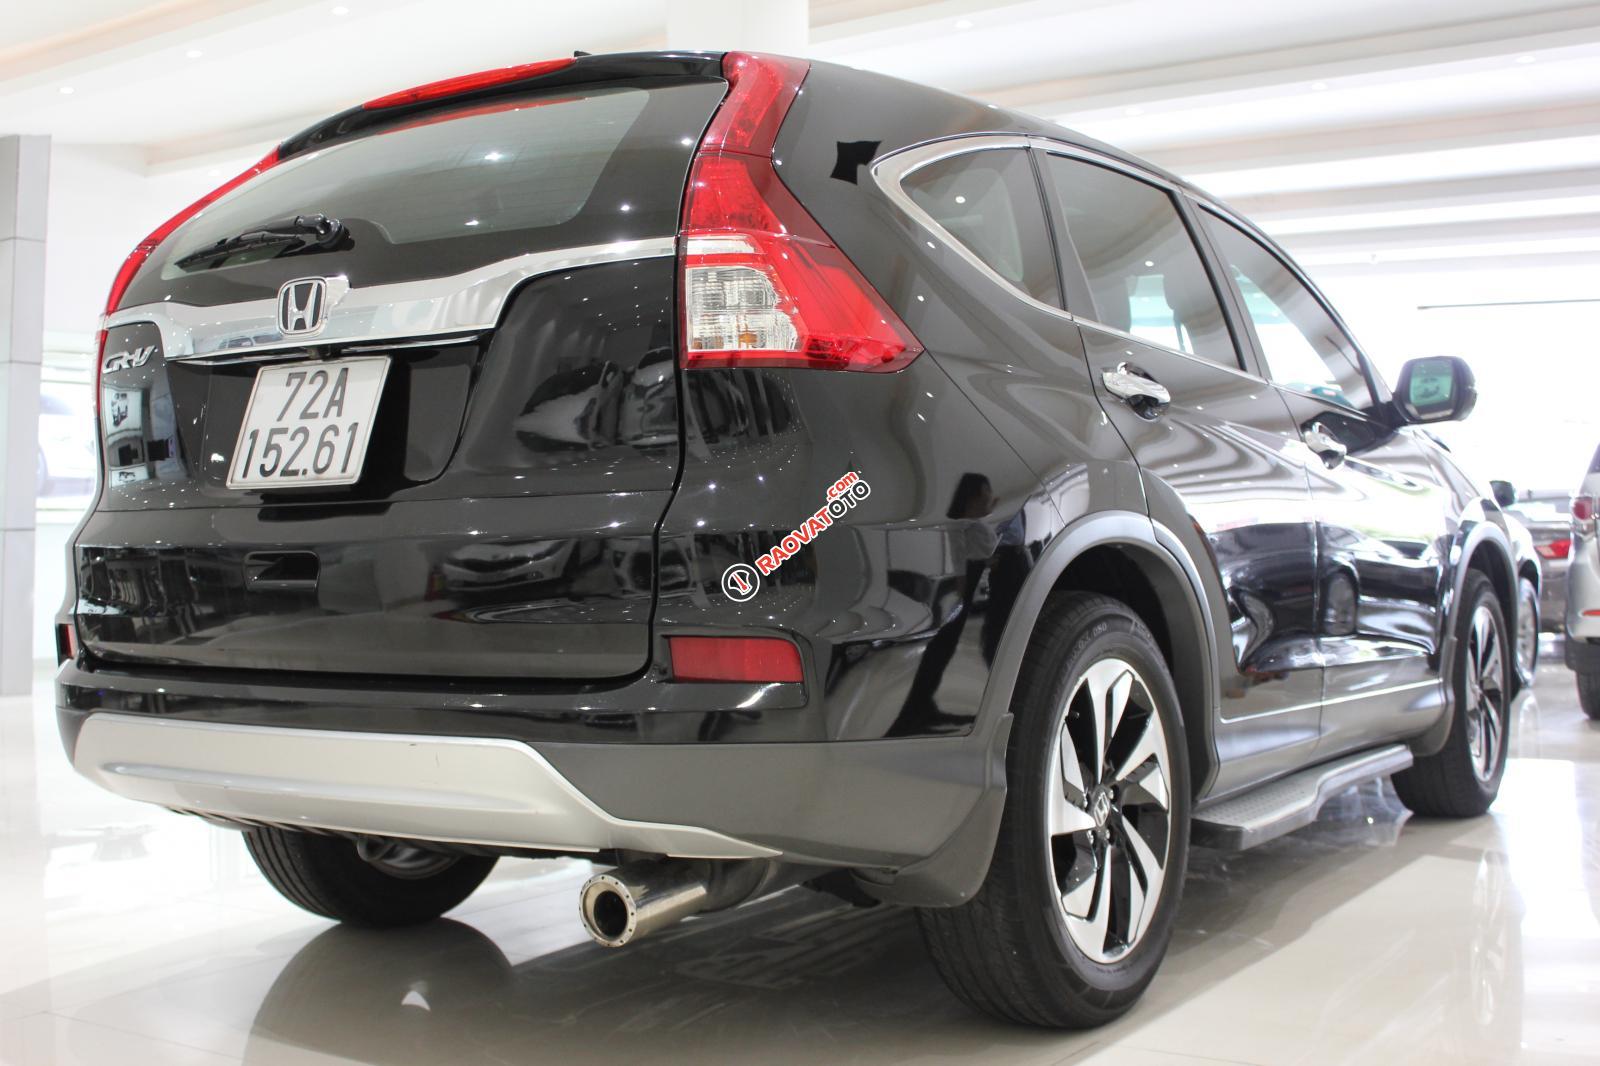 Cần bán Honda CR-V sản xuất 2015, xe công ty mua từ đầu chính hãng Honda, có xuất hóa đơn-9